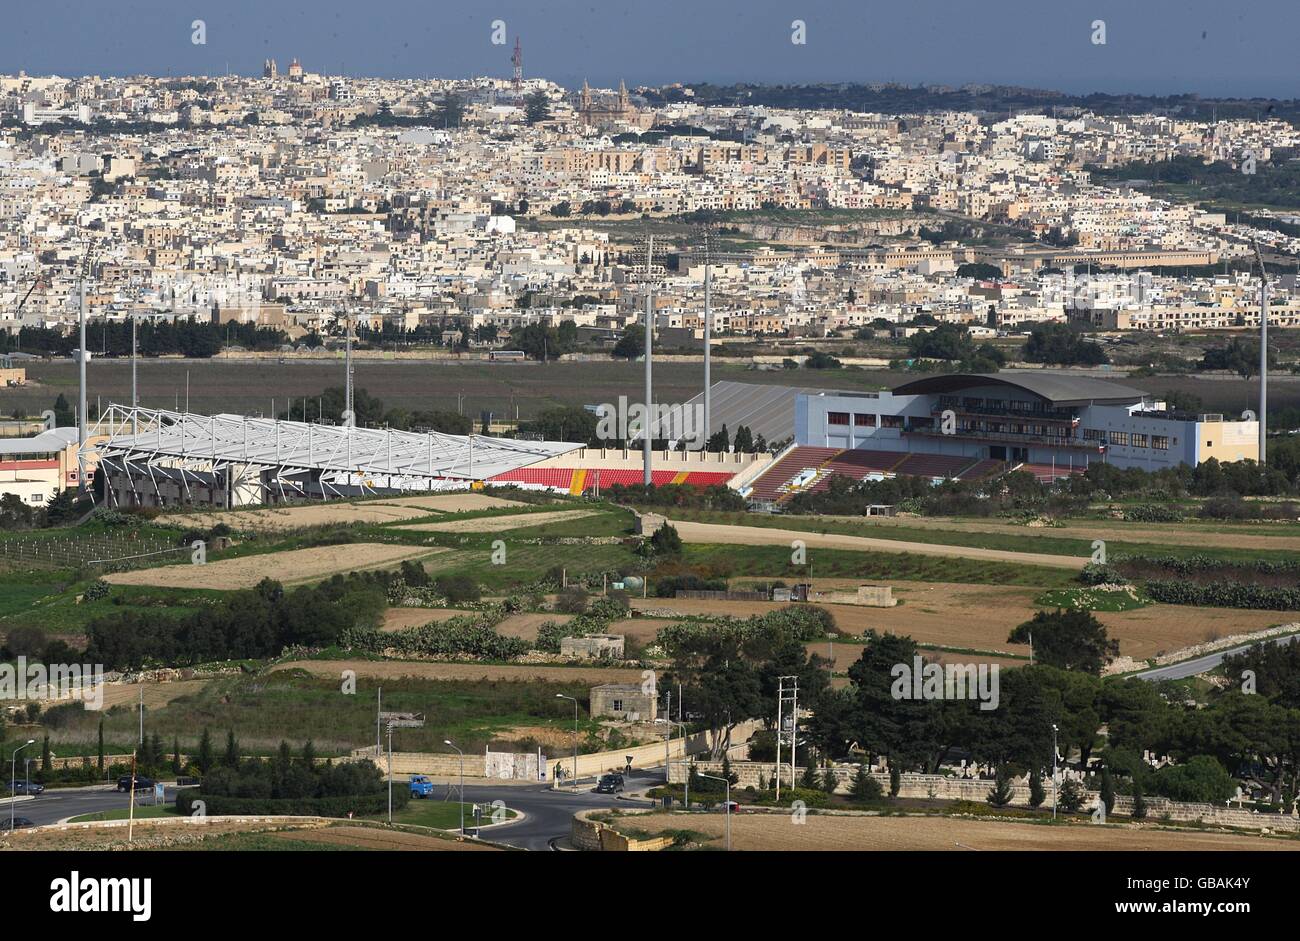 Stock de viajes - Malta. Vista general del Estadio Ta' Qali, el Estadio Nacional de Fútbol de Malta, visto desde las colinas Foto de stock